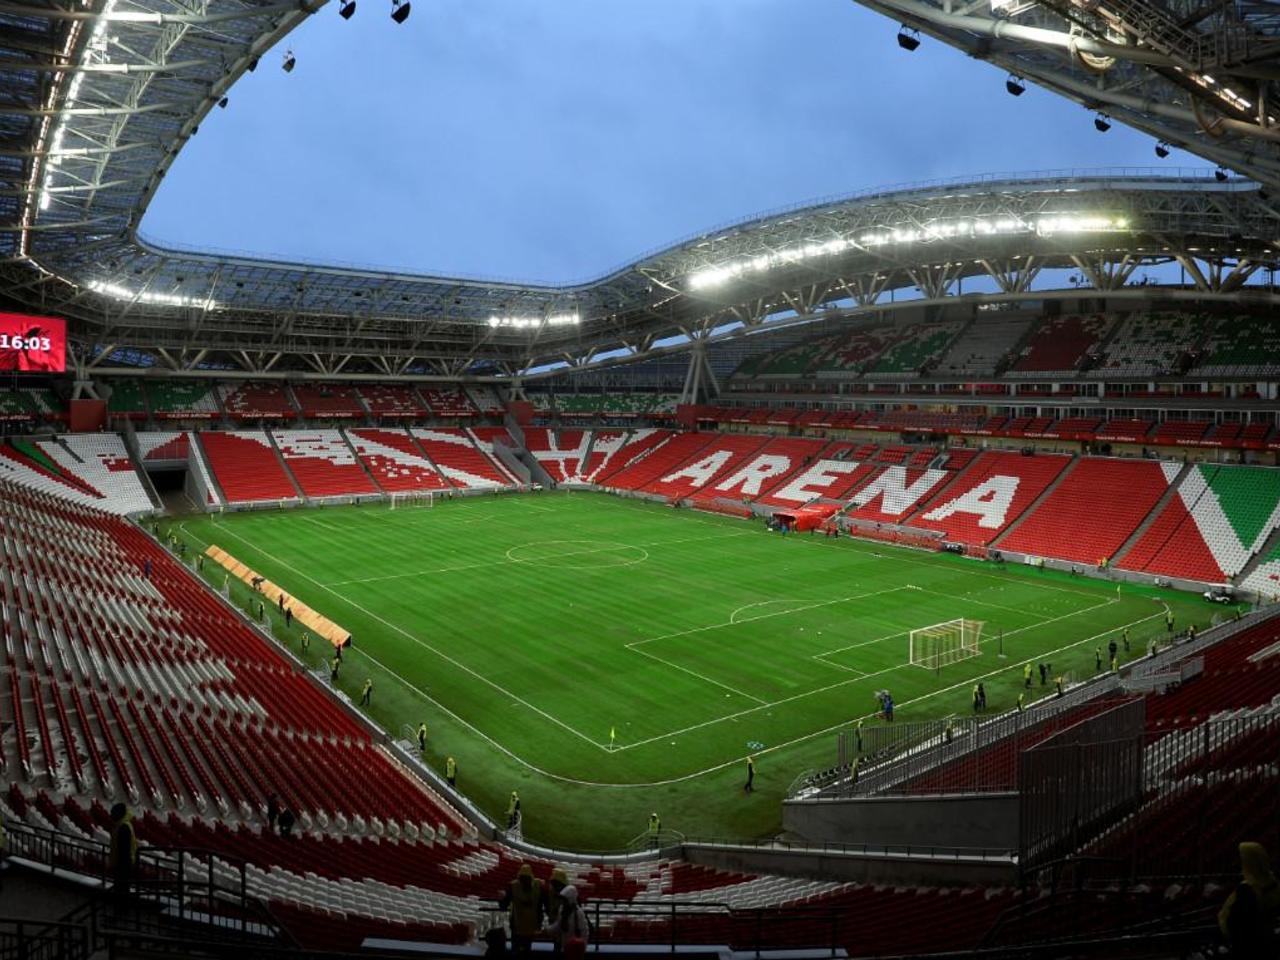 Стадион «Казань Арена»